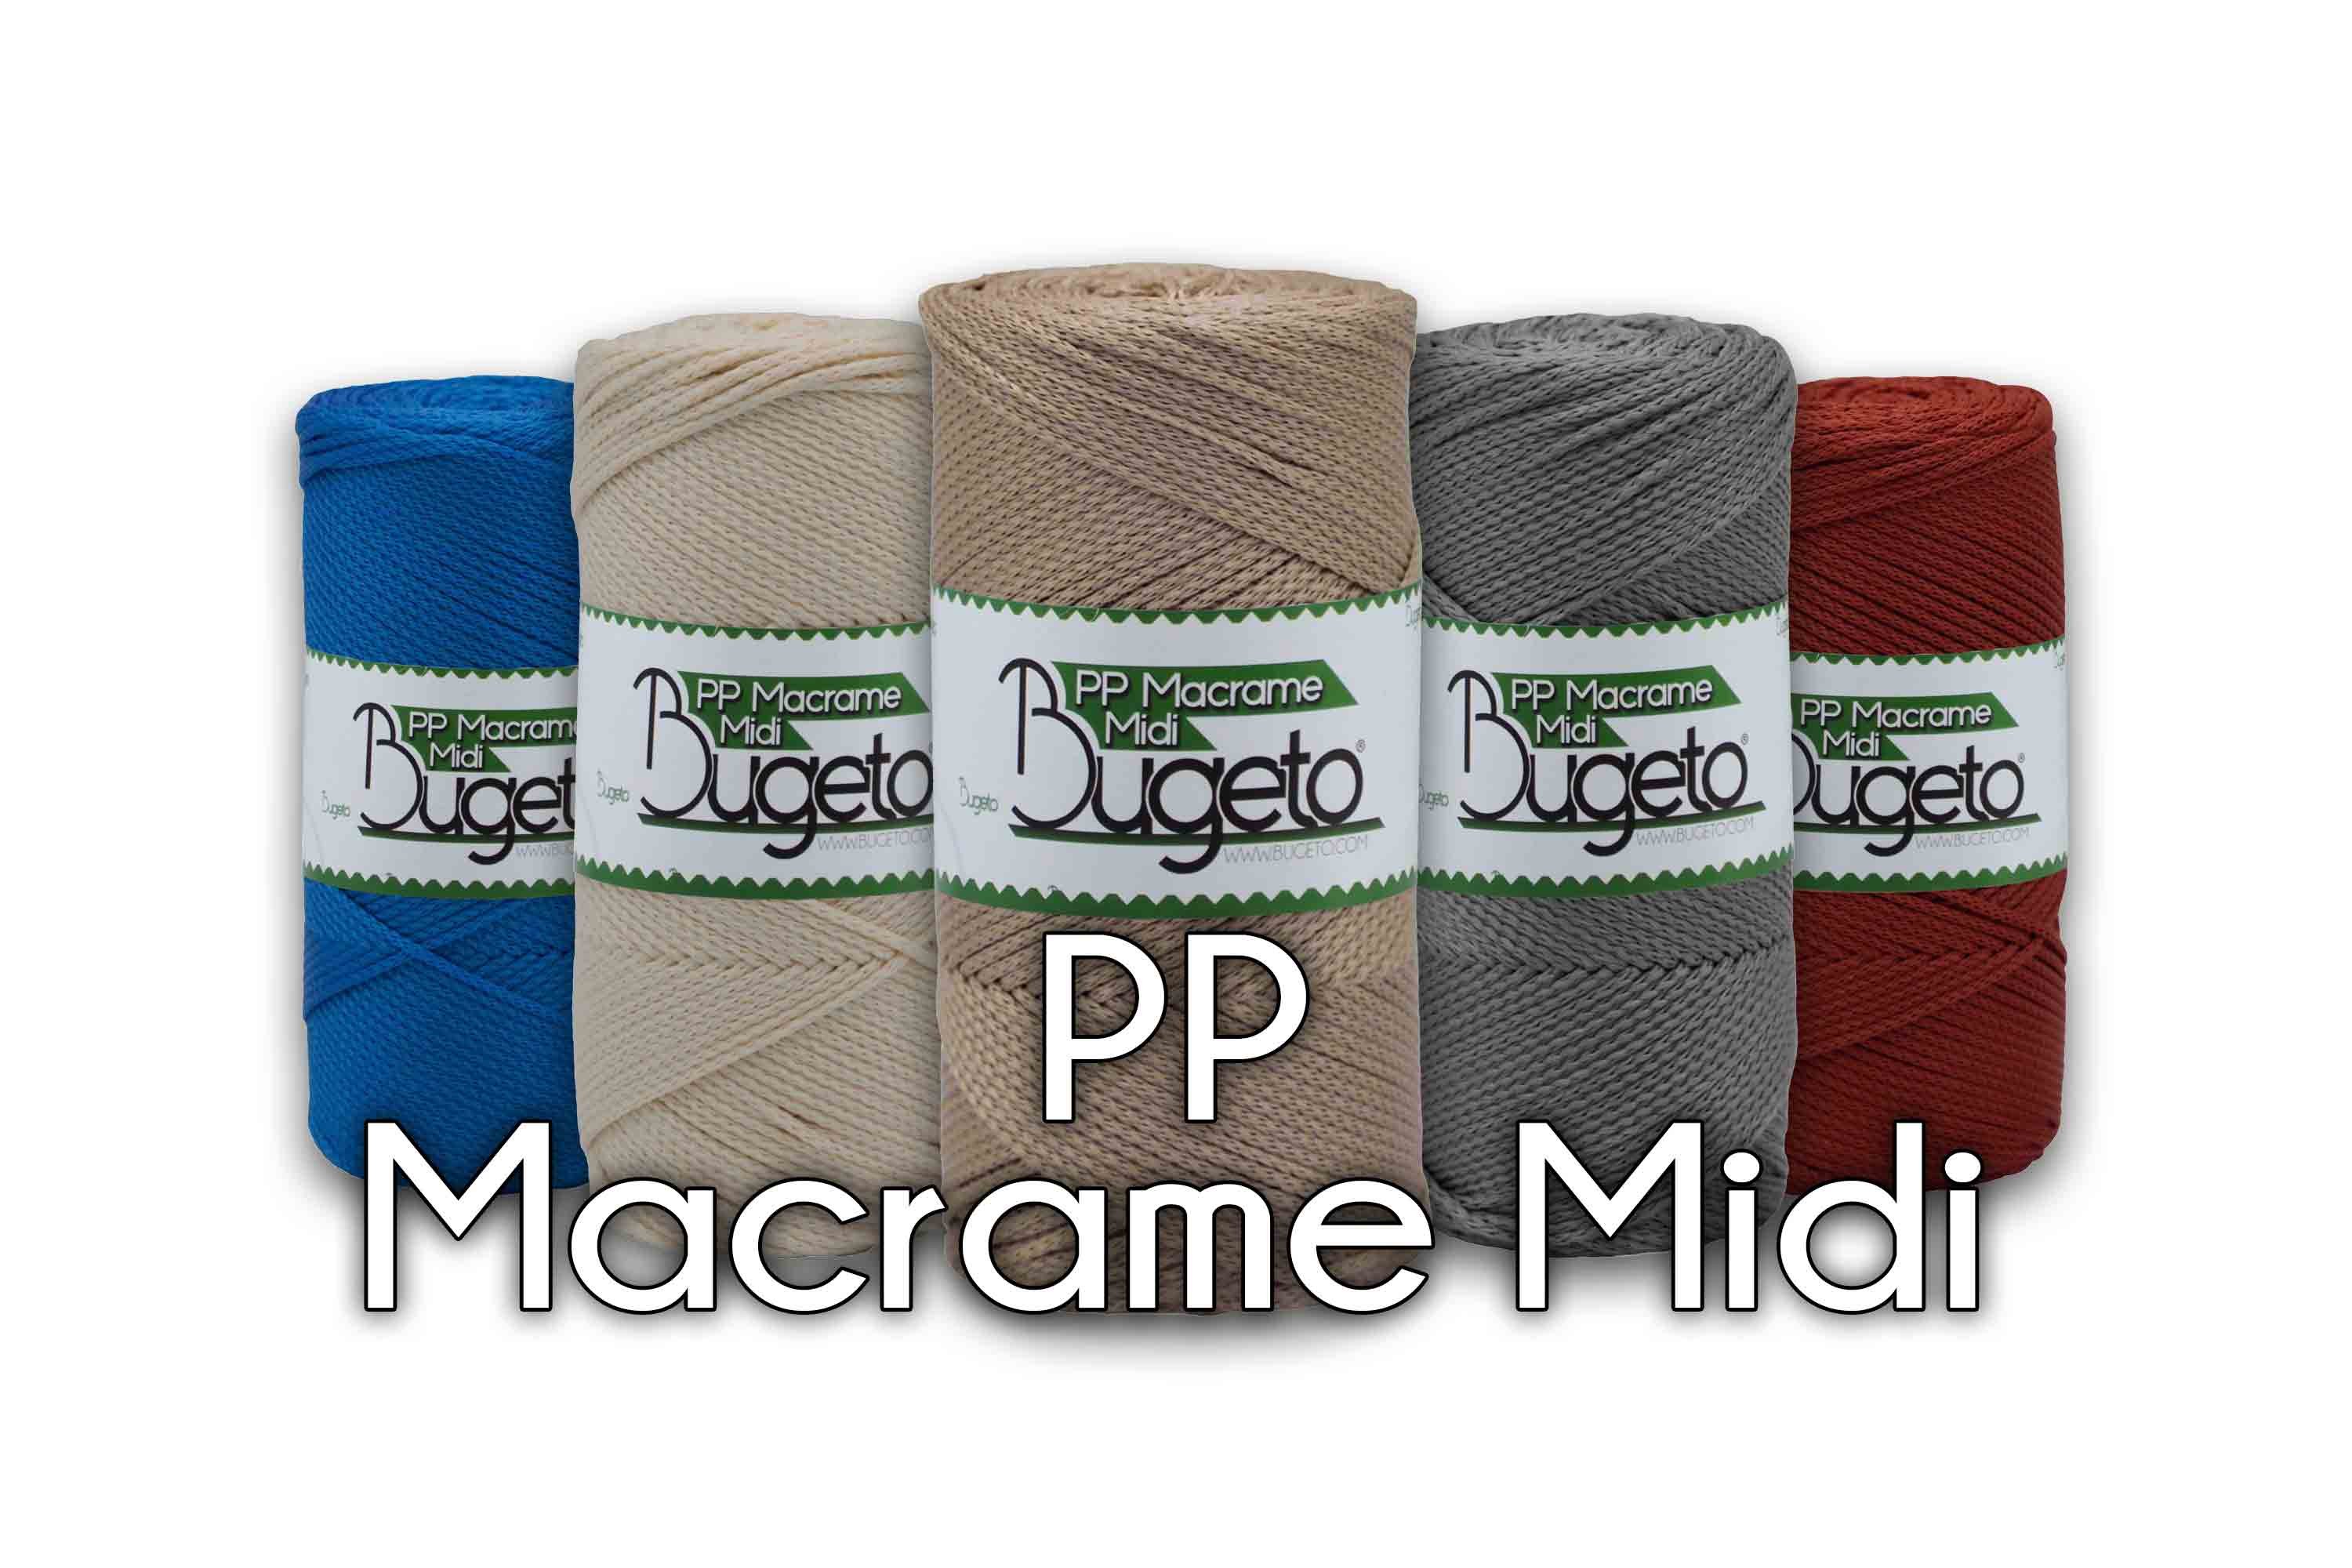 polyproplene yarn  macrame yarns pp macrame large yarn bugeto yarn